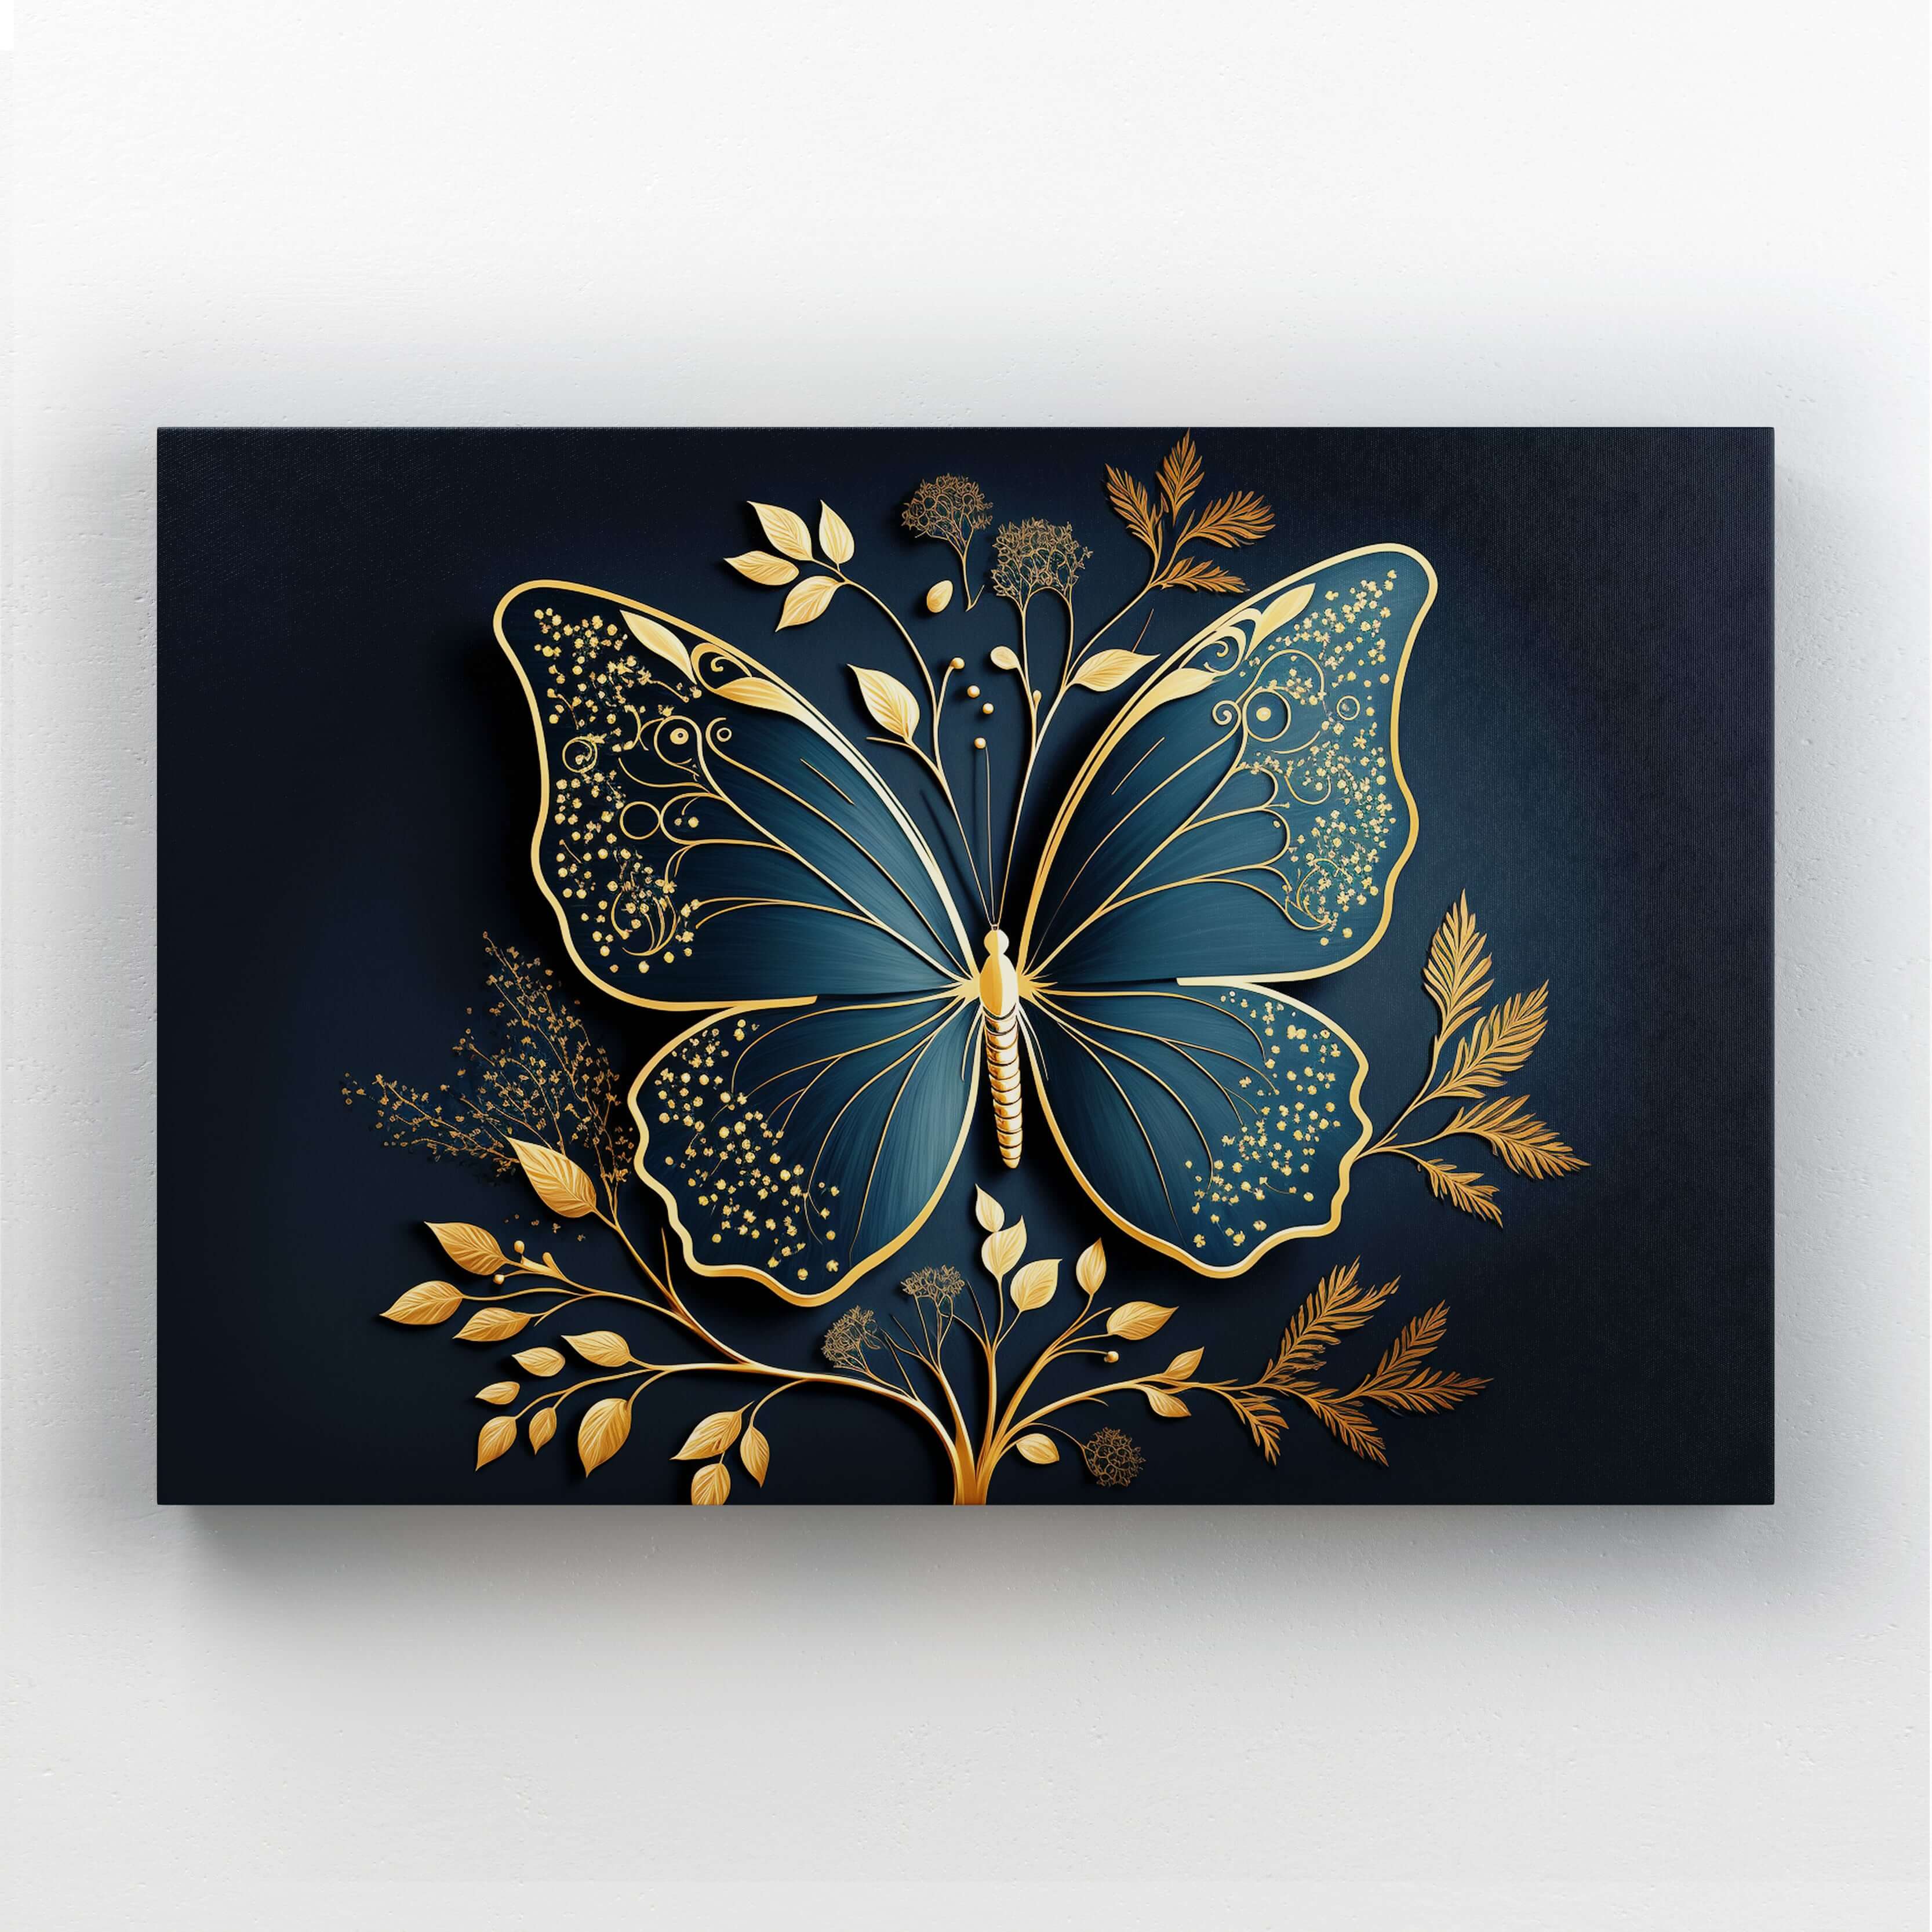 3D Gold | Butterfly Art Wall MusaArtGallery™